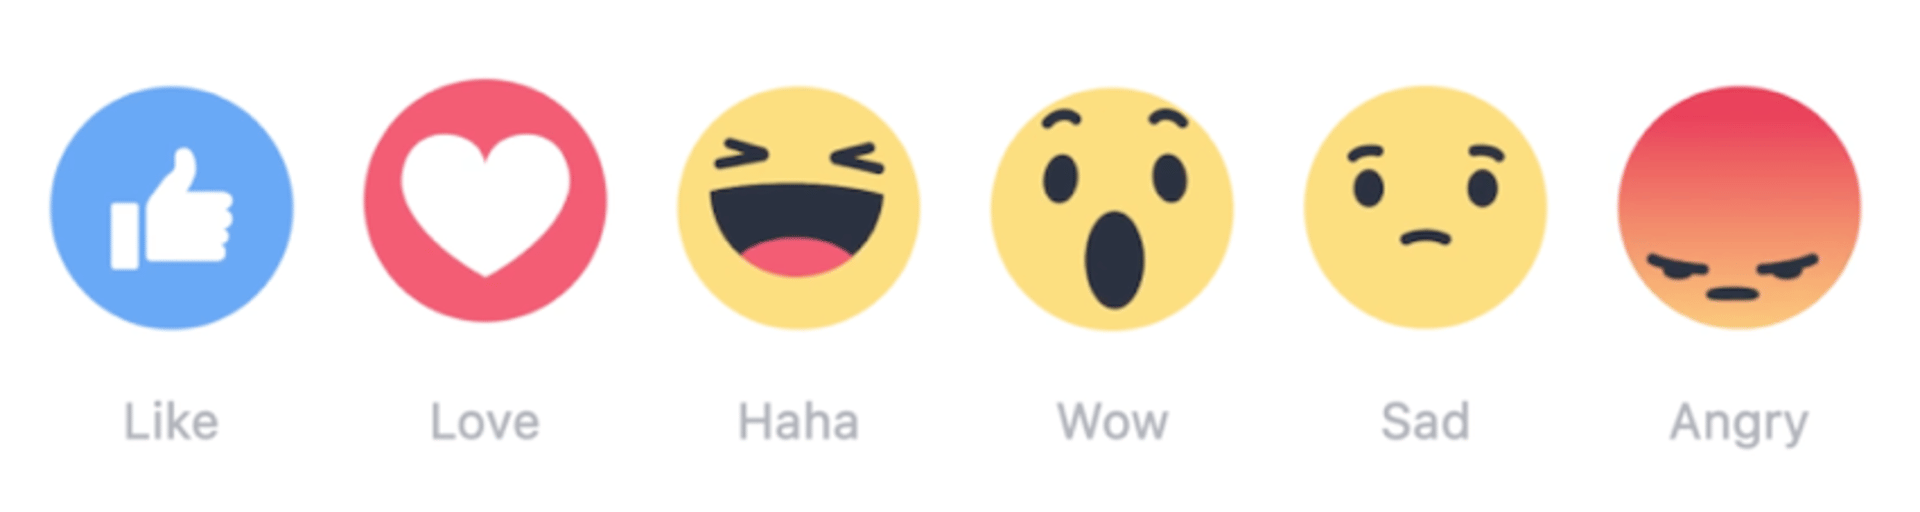 Social Media Emoji Kpis